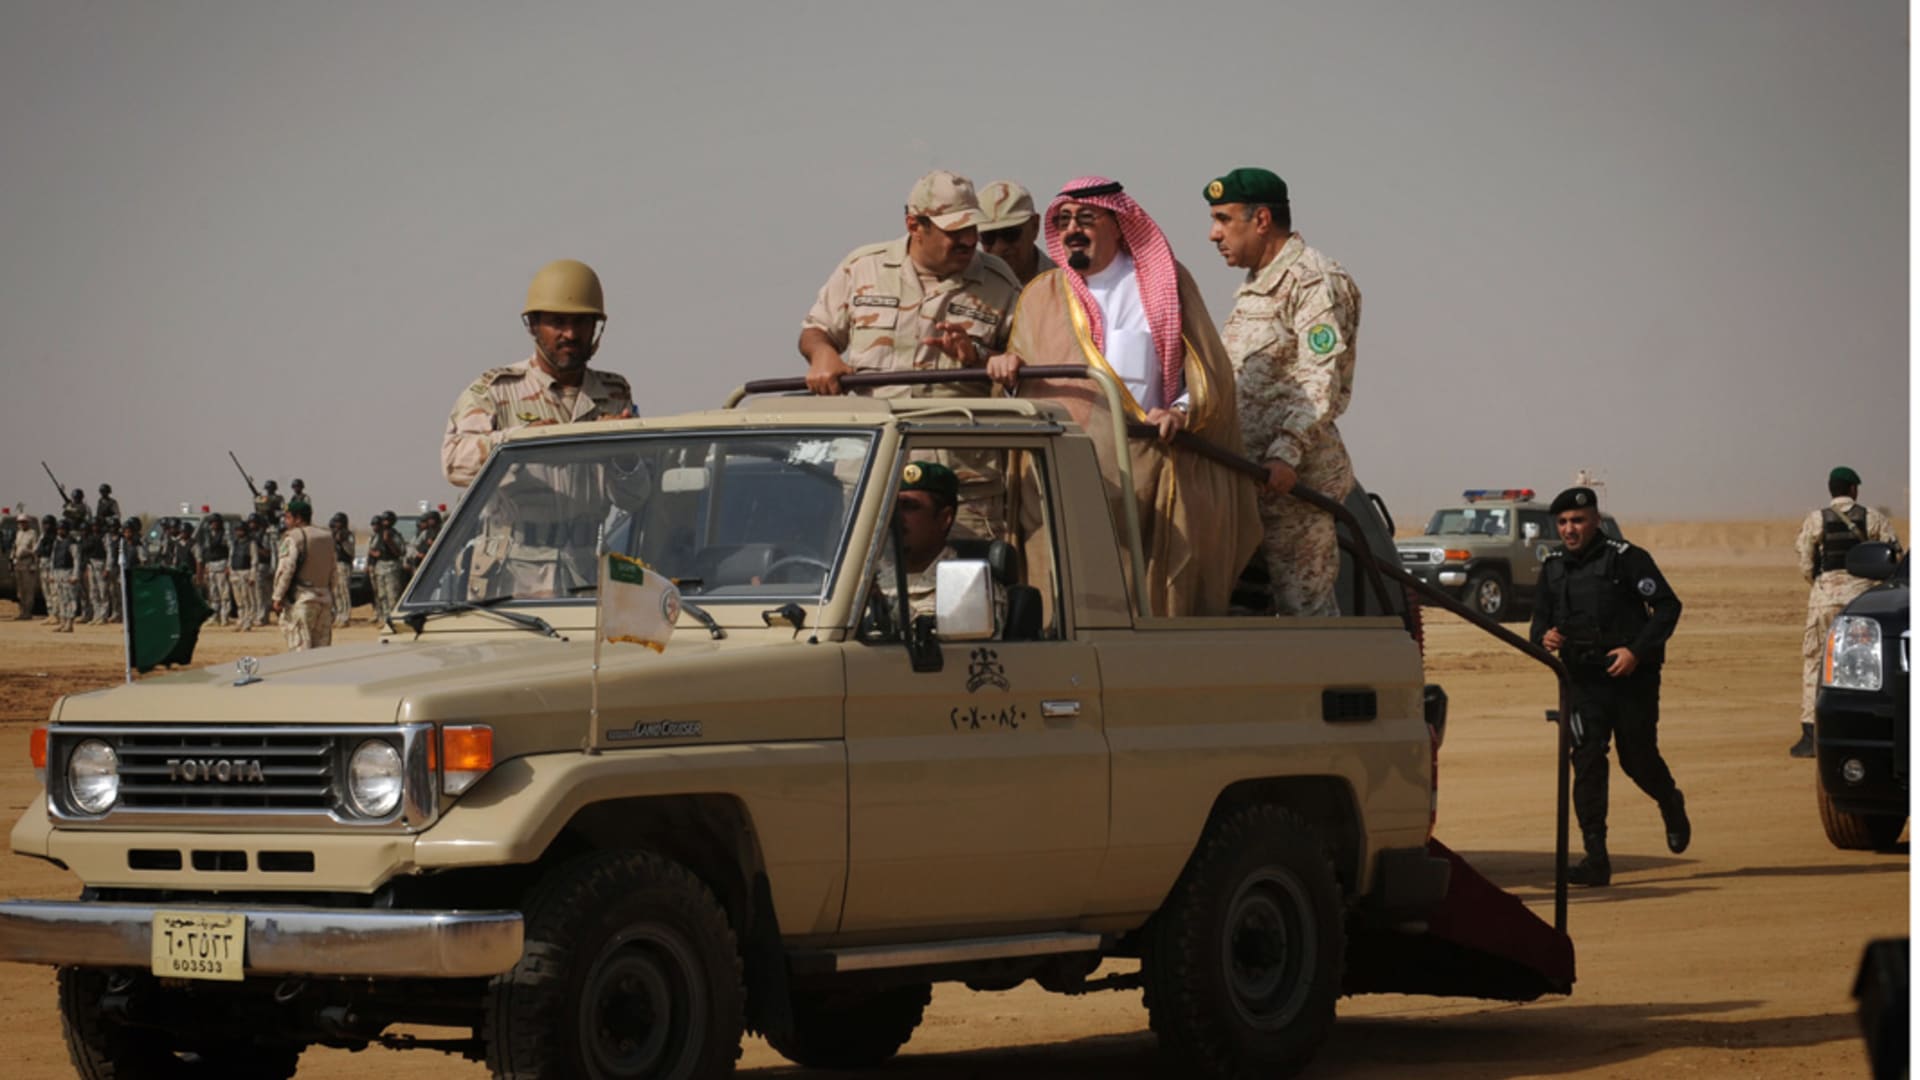 بالصور ذكريات الحرب السعودية الأولى مع الحوثيين 2009 2010 Cnn Arabic